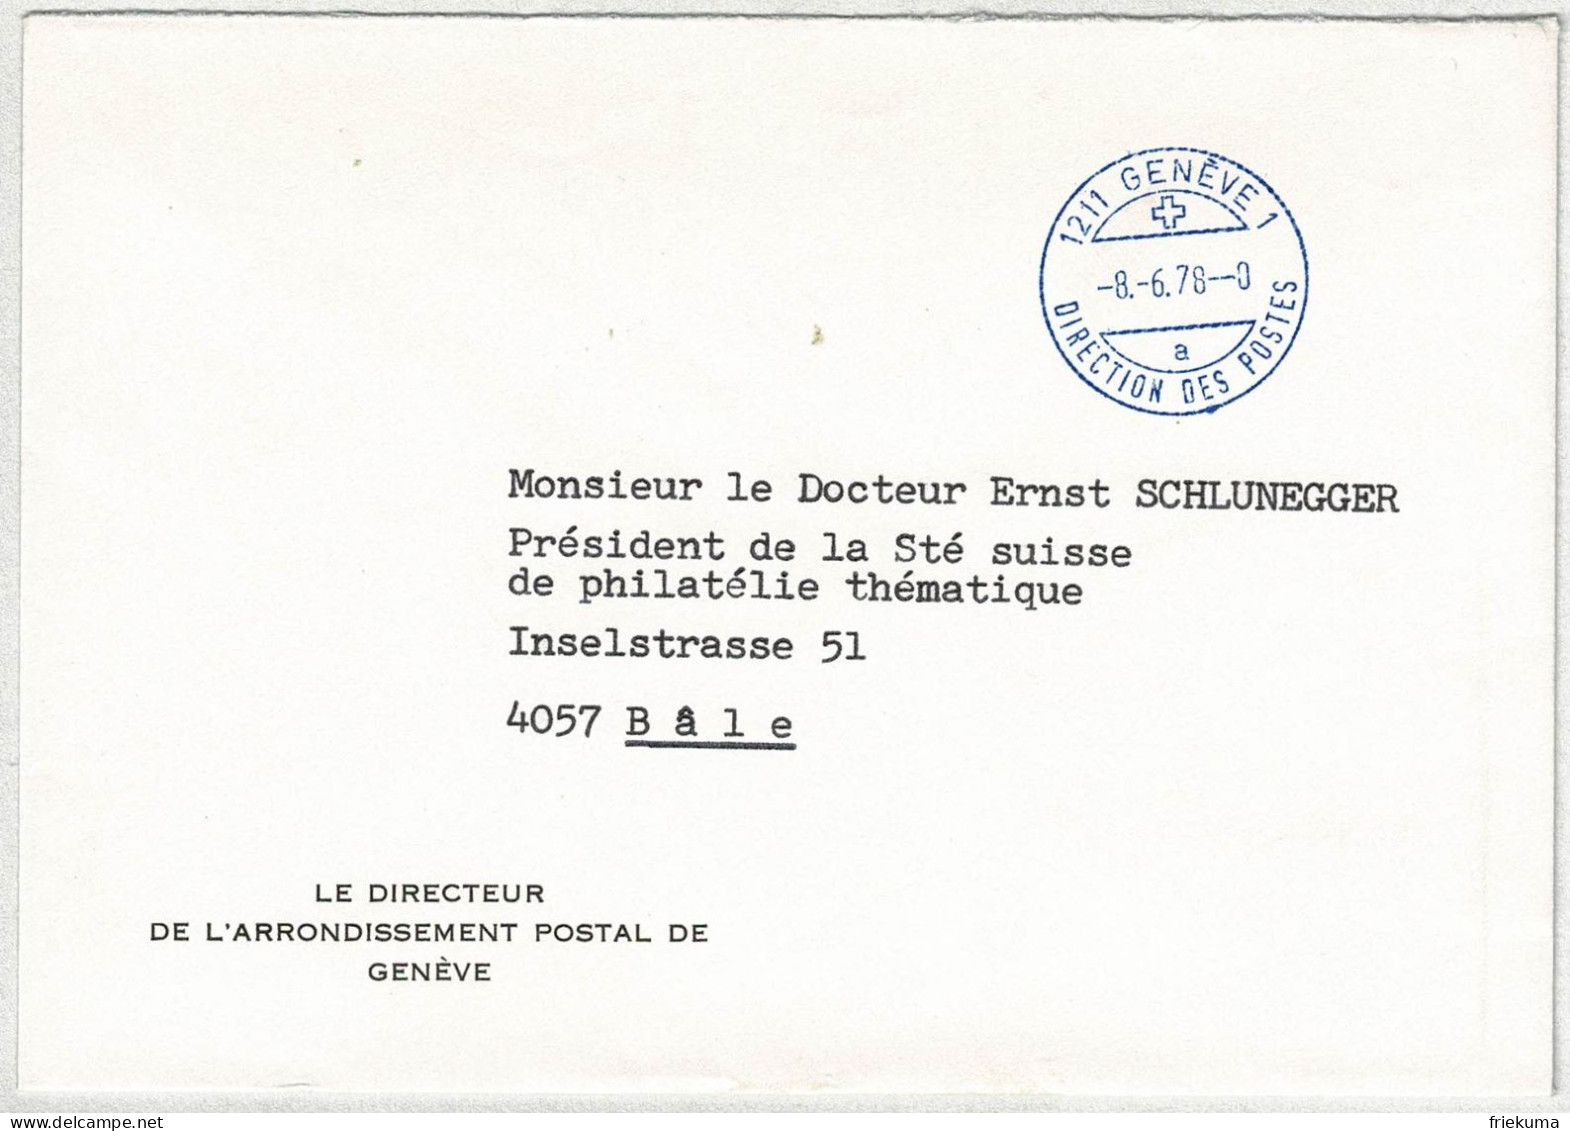 Schweiz 1978, Brief Direction Des Postes Genève - Basel, Postsache, Portofrei - Postmark Collection